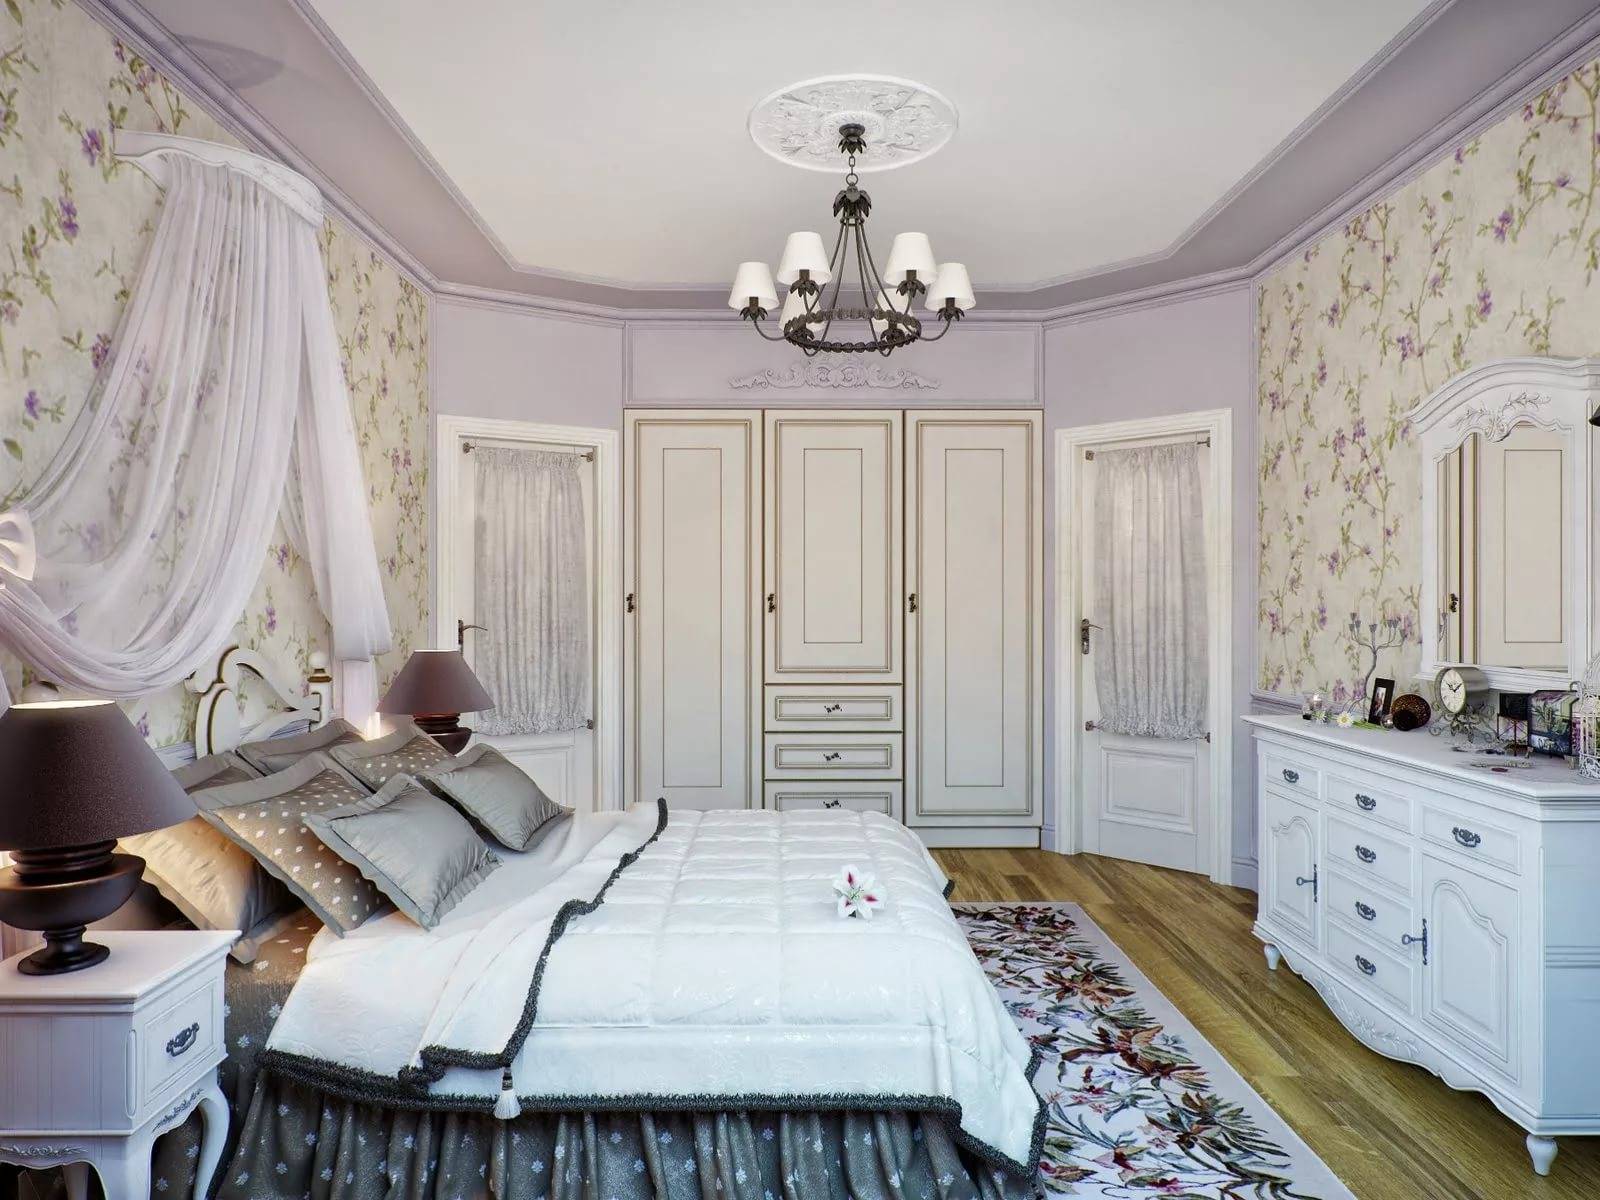 Мебель в стиле прованс для спальни - лучшие фото и идеи дизайна!